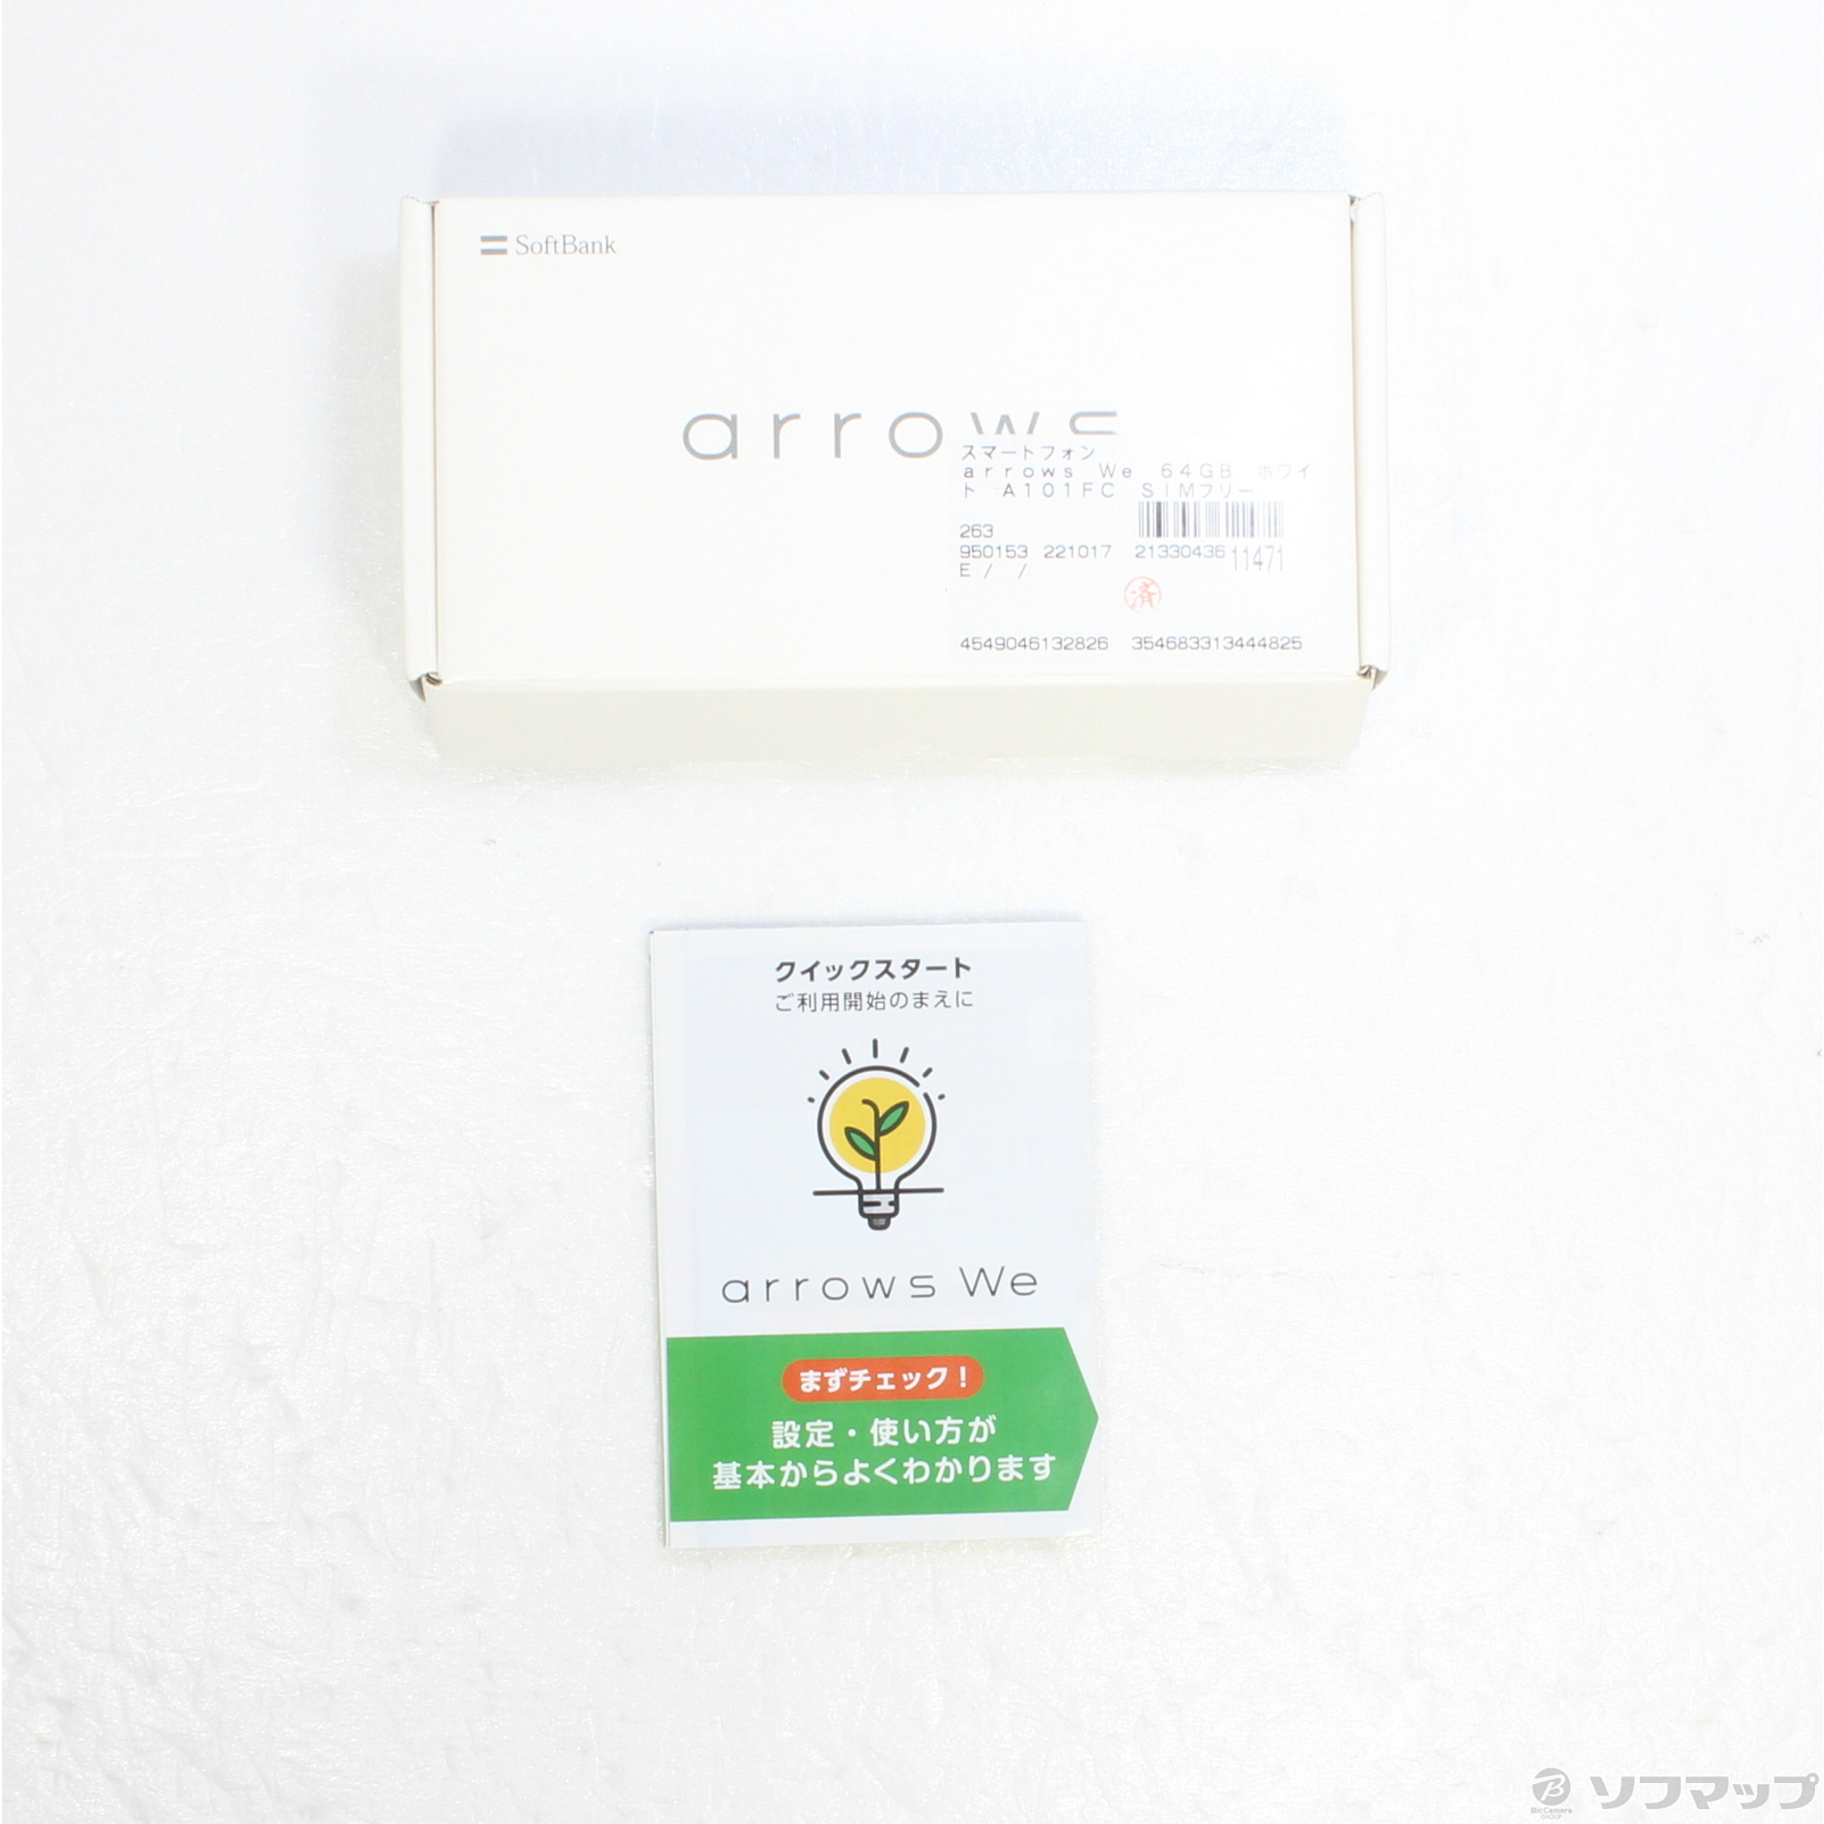 中古】arrows We 64GB ホワイト A101FC SoftBank ◇02/01(水)値下げ